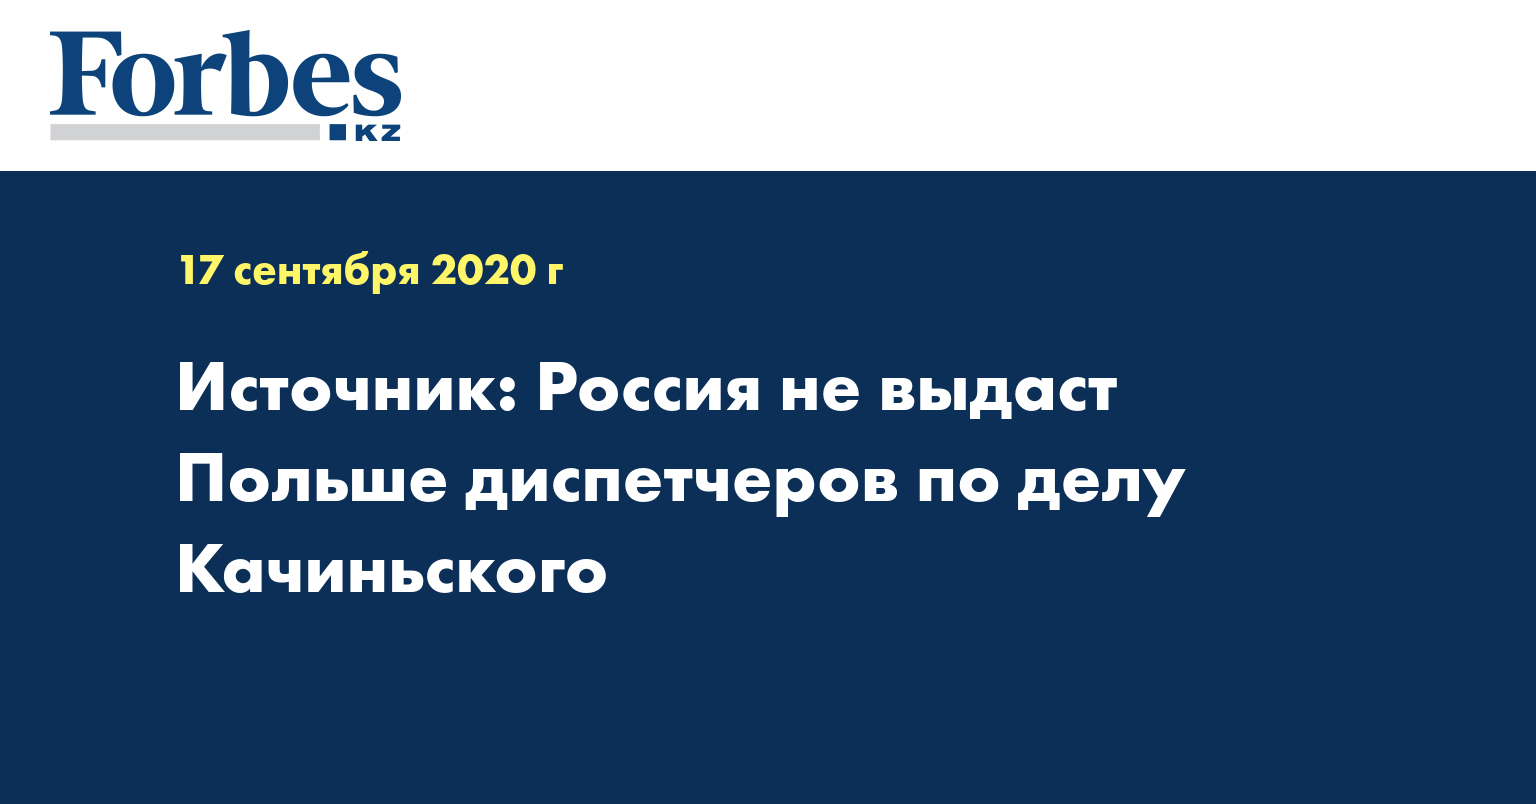 Источник: Россия не выдаст Польше диспетчеров по делу Качиньского